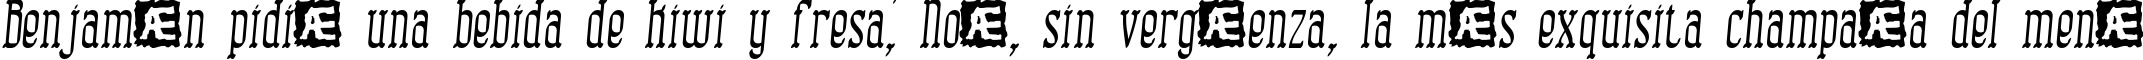 Пример написания шрифтом Combustion II BRK текста на испанском